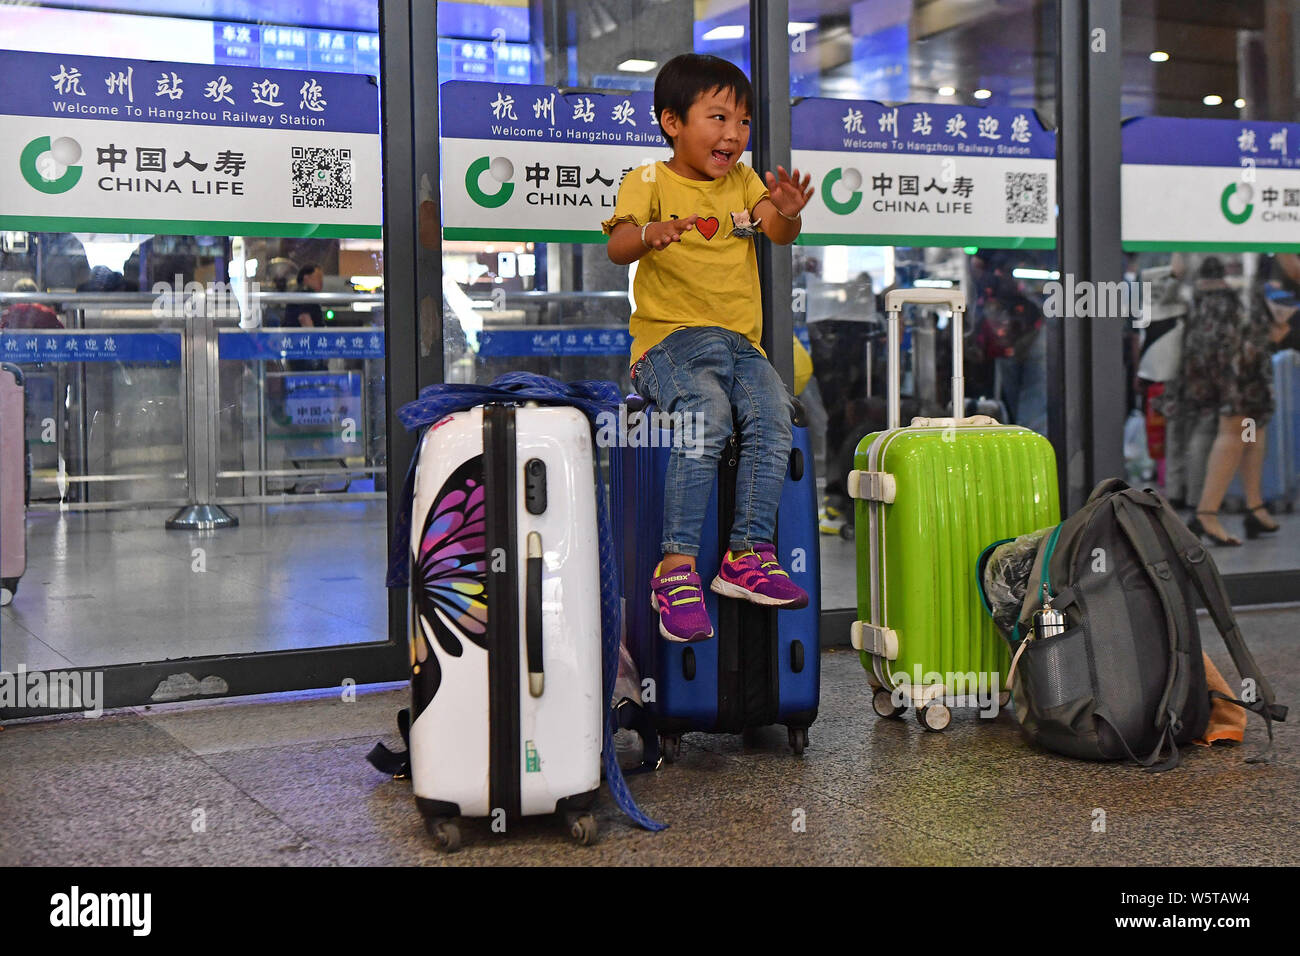 --FILE--A-sinistra dietro il bambino guarda eccitato come egli si prepara a tornare a casa a Hangzhou stazione ferroviaria di Hangzhou, a est della Cina di Zhejiang pro Foto Stock